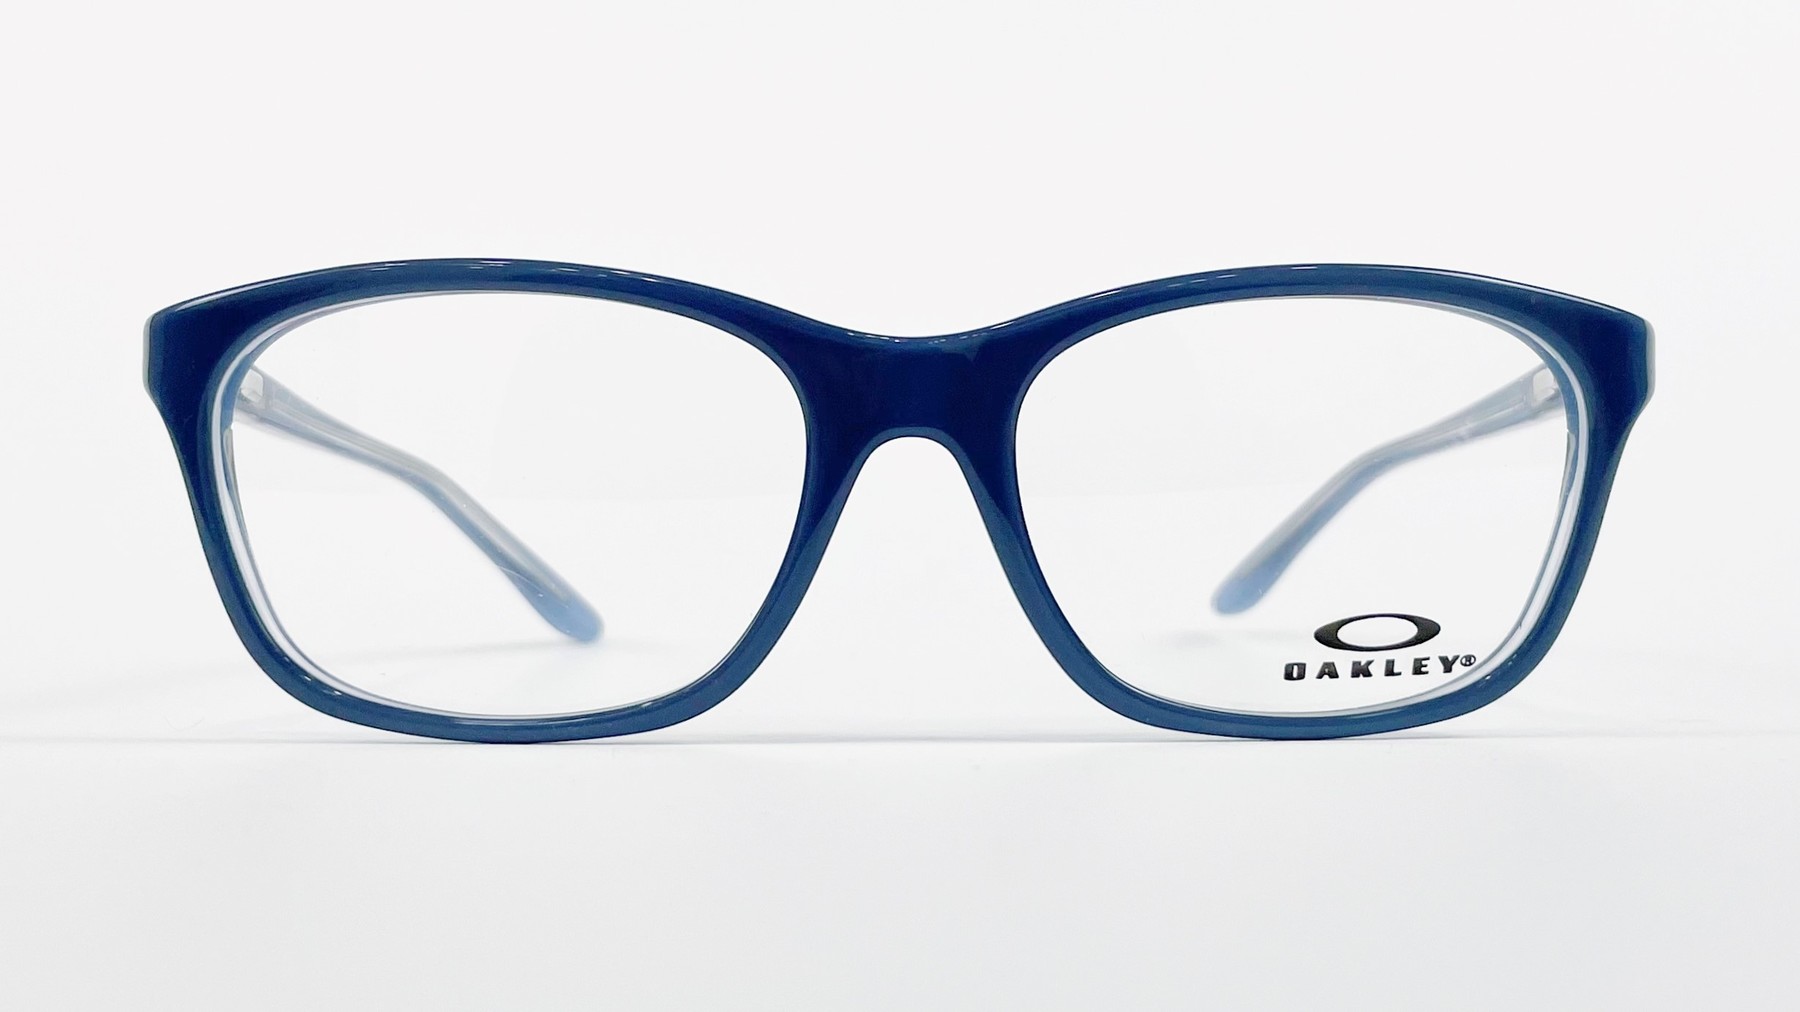 OAKLEY OX1091-1152, Korean glasses, sunglasses, eyeglasses, glasses